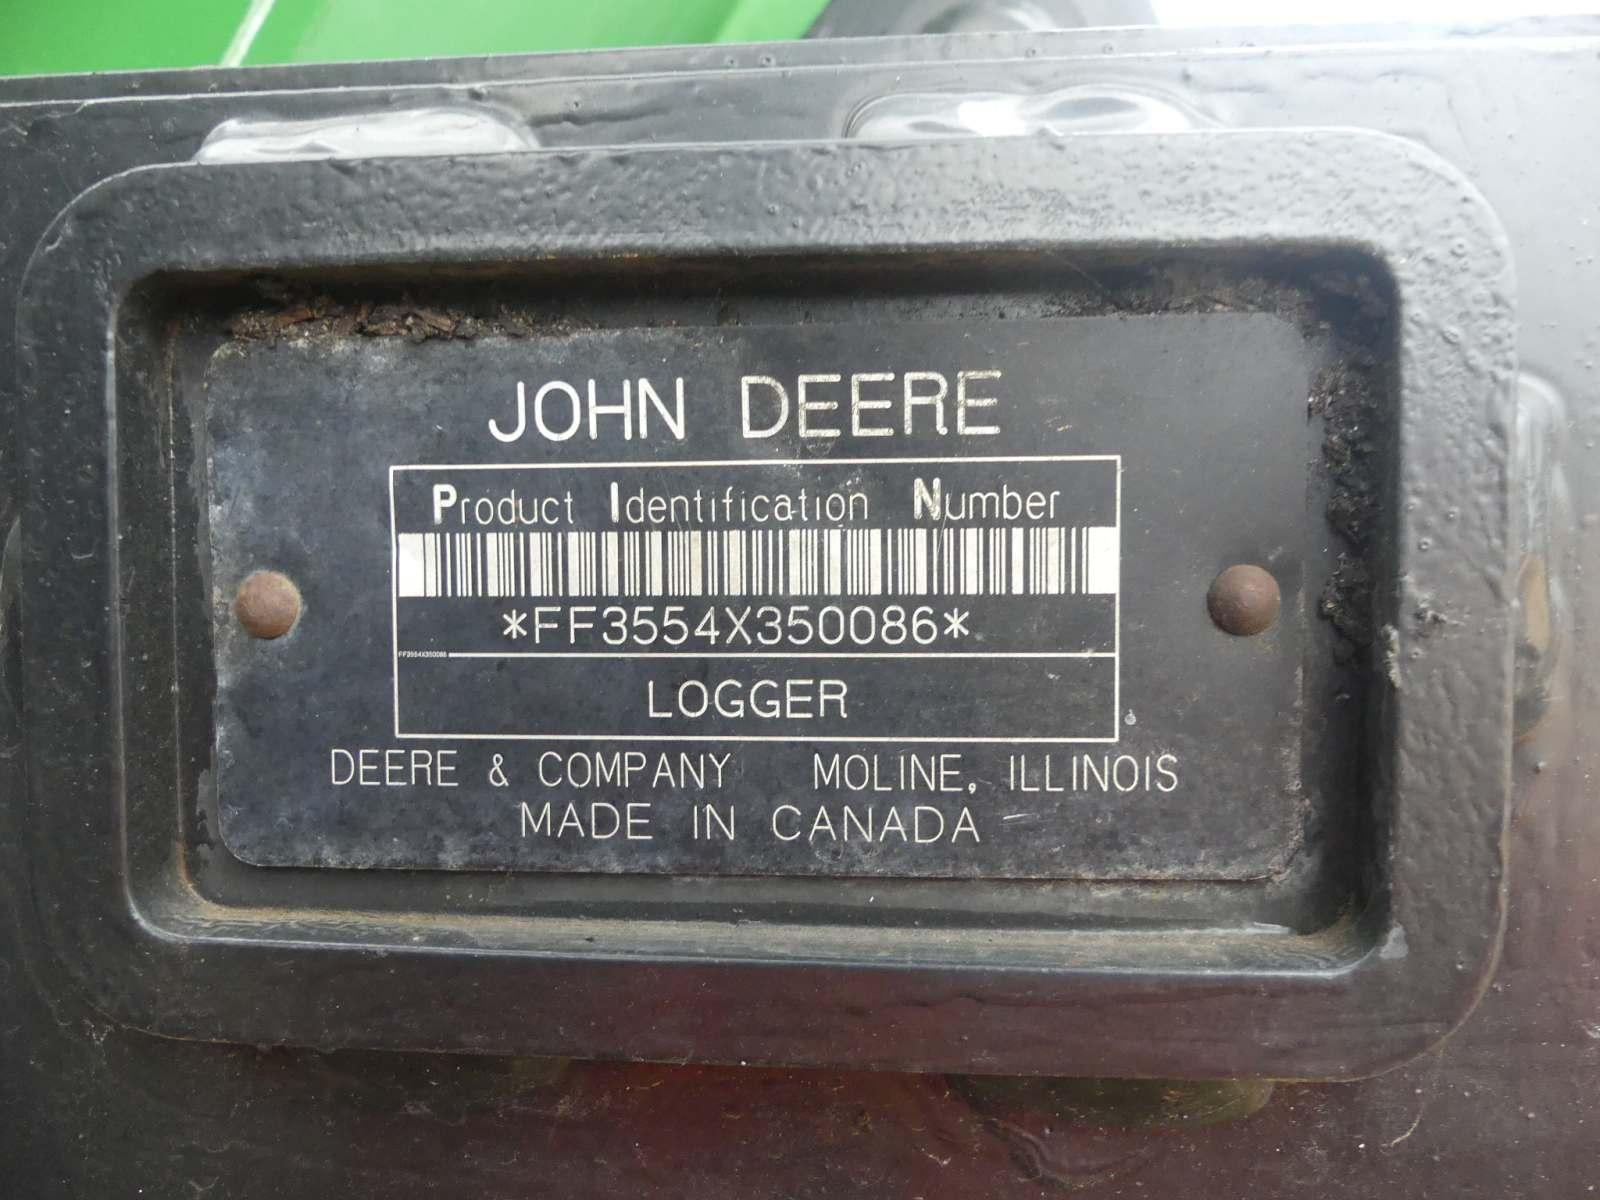 2008 John Deere 3554 Knuckleboom Crawler Log Loader, s/n FF3554X350086: Hyd